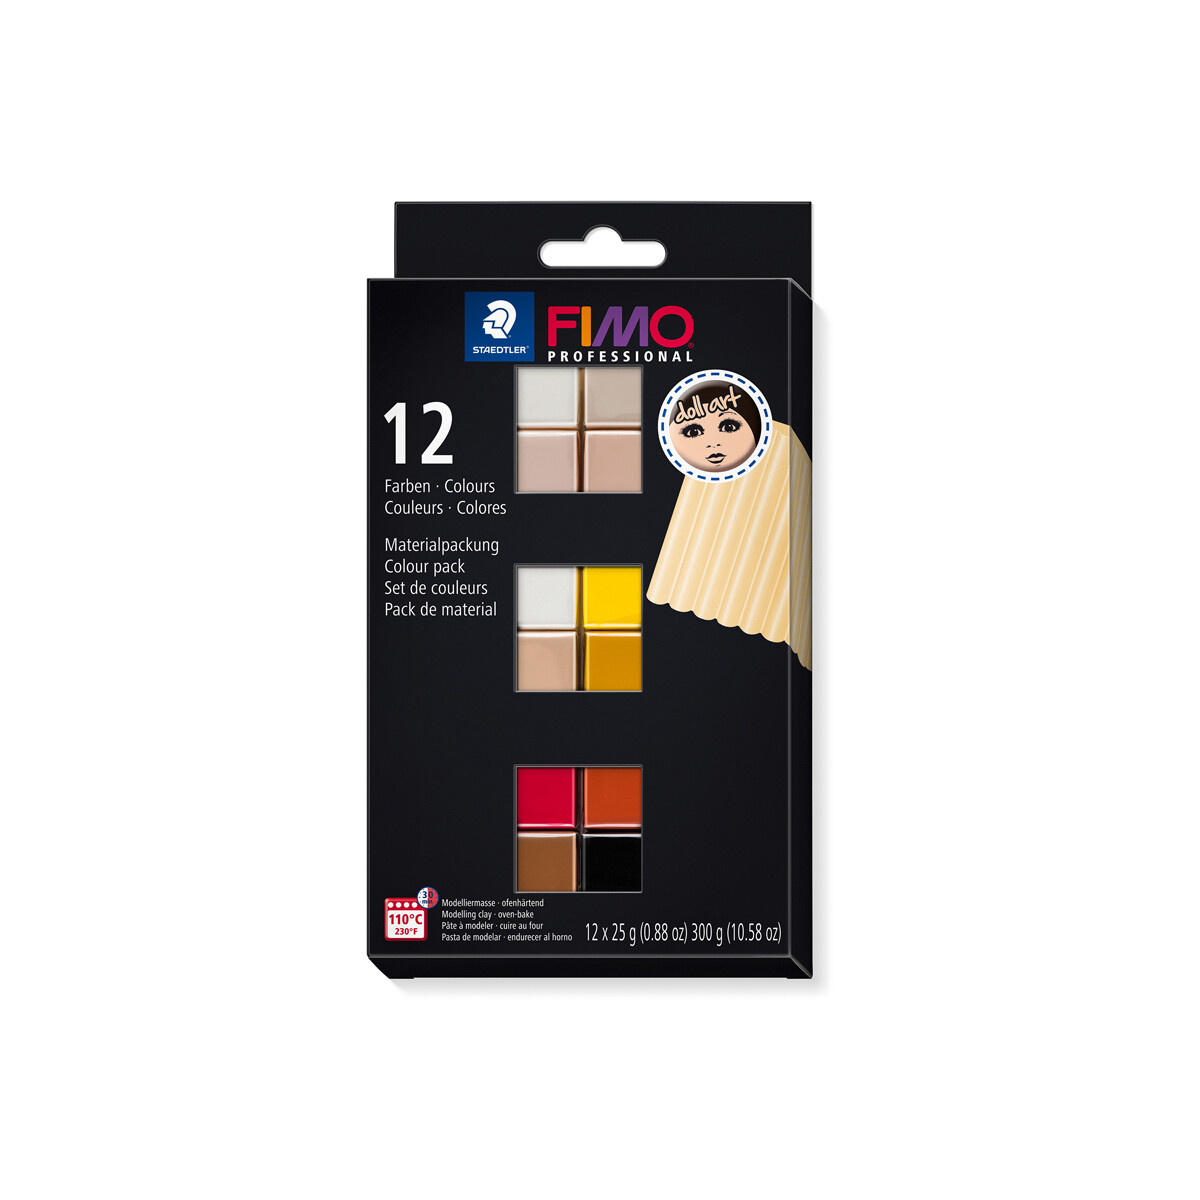 Modelliermasse 8027 STAEDTLER FIMO professional doll art 85g verschiedene Farben 